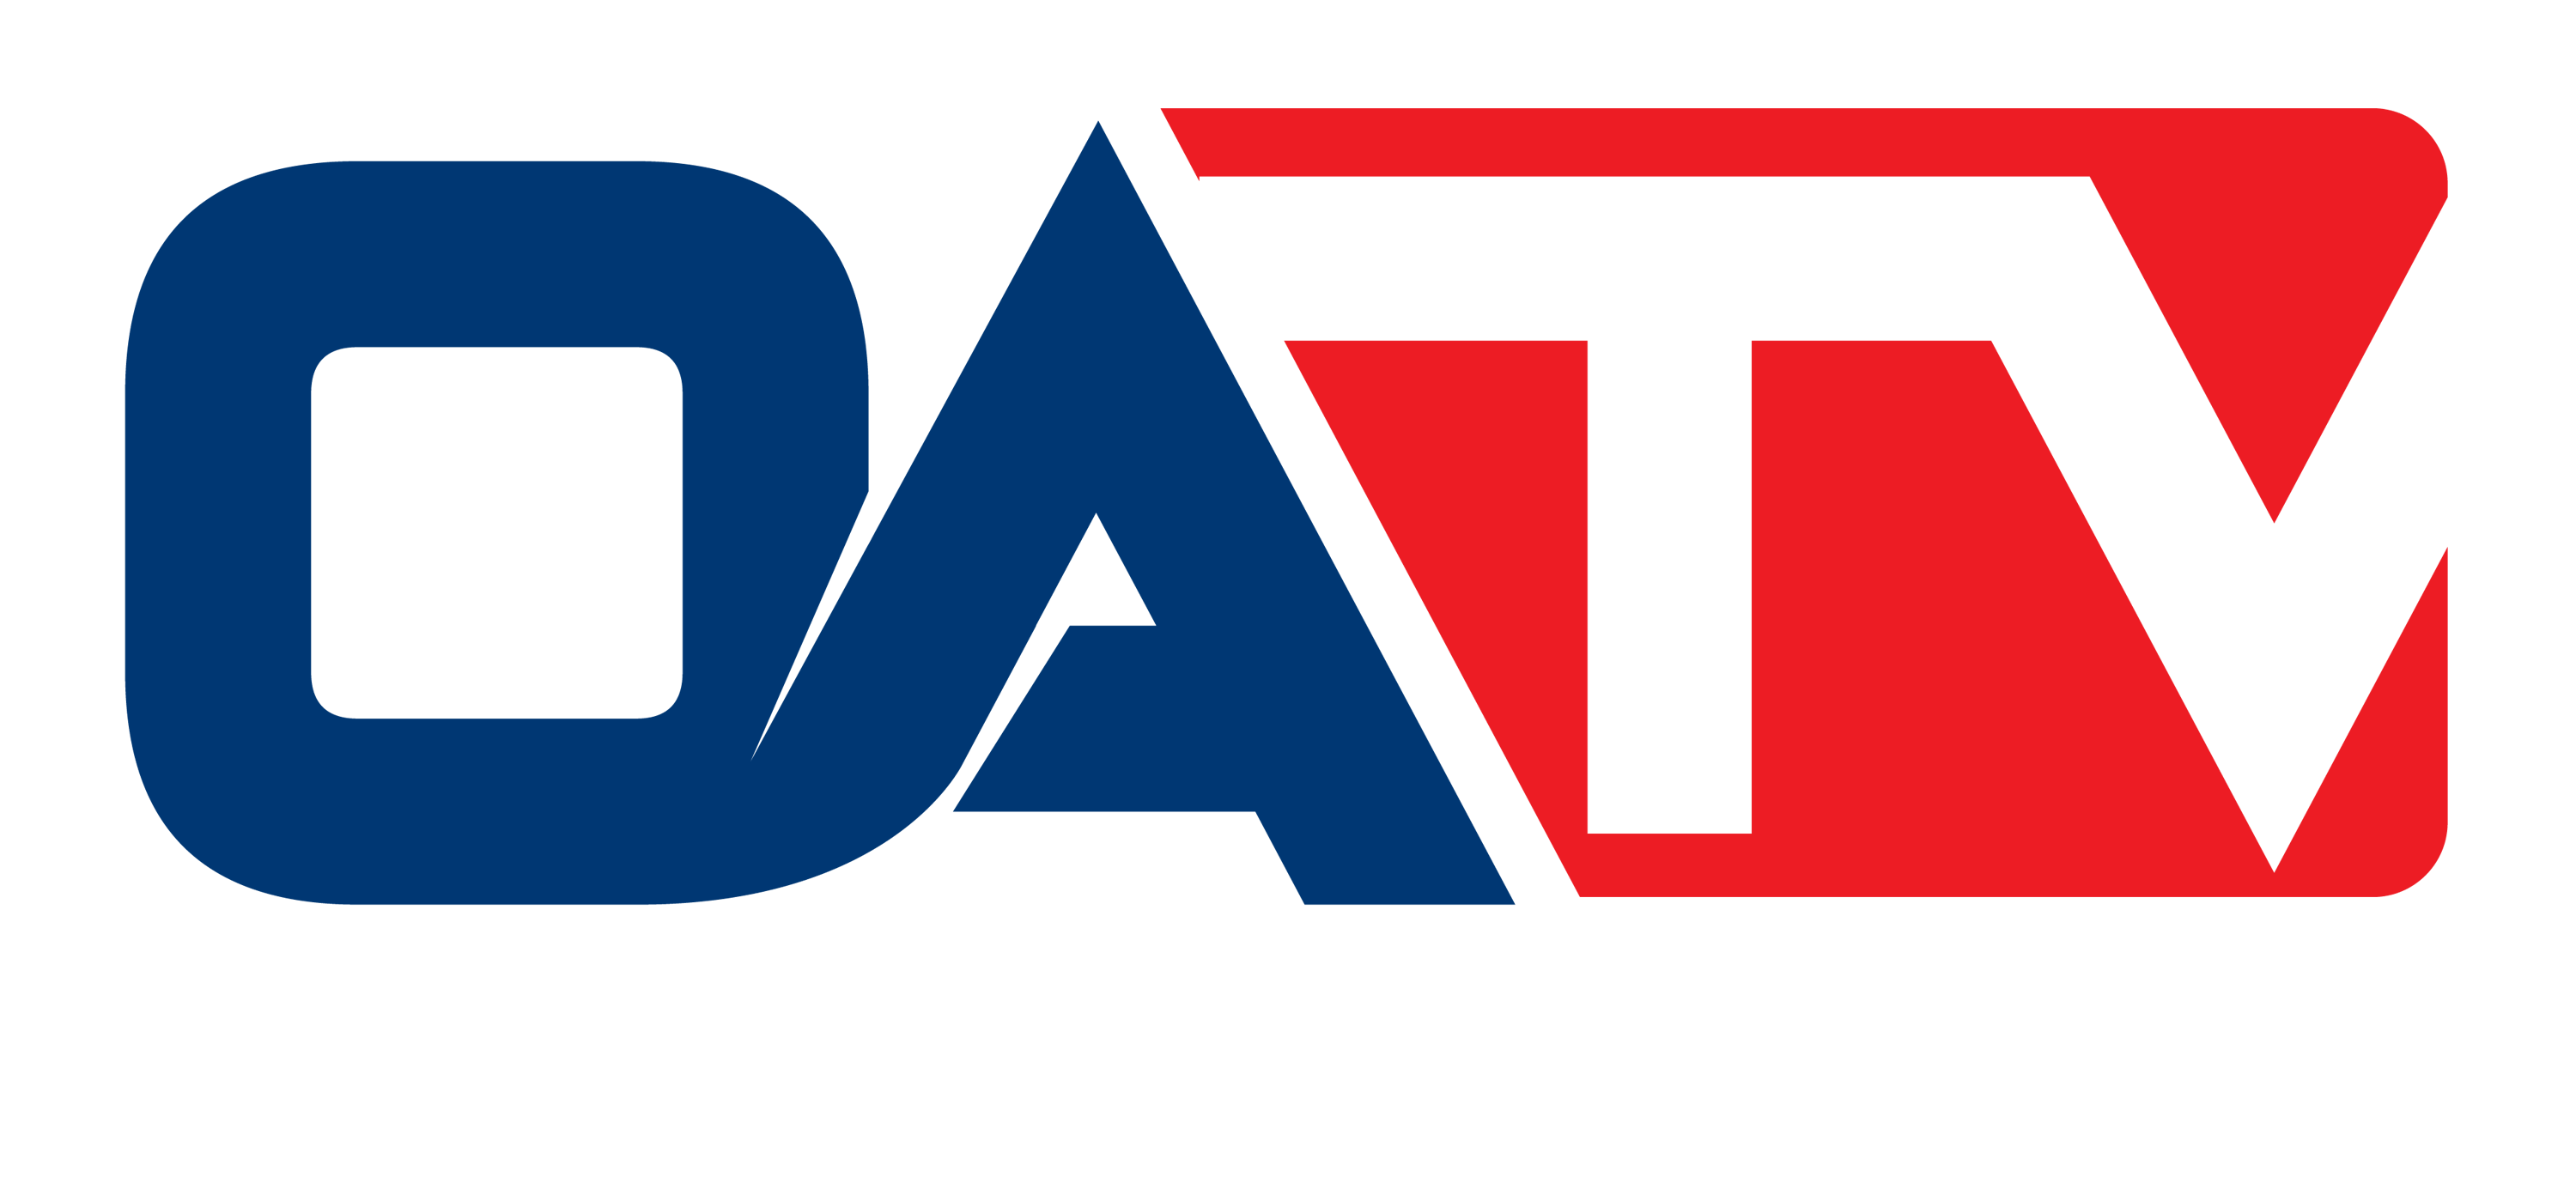 Outdoor Adventure Network